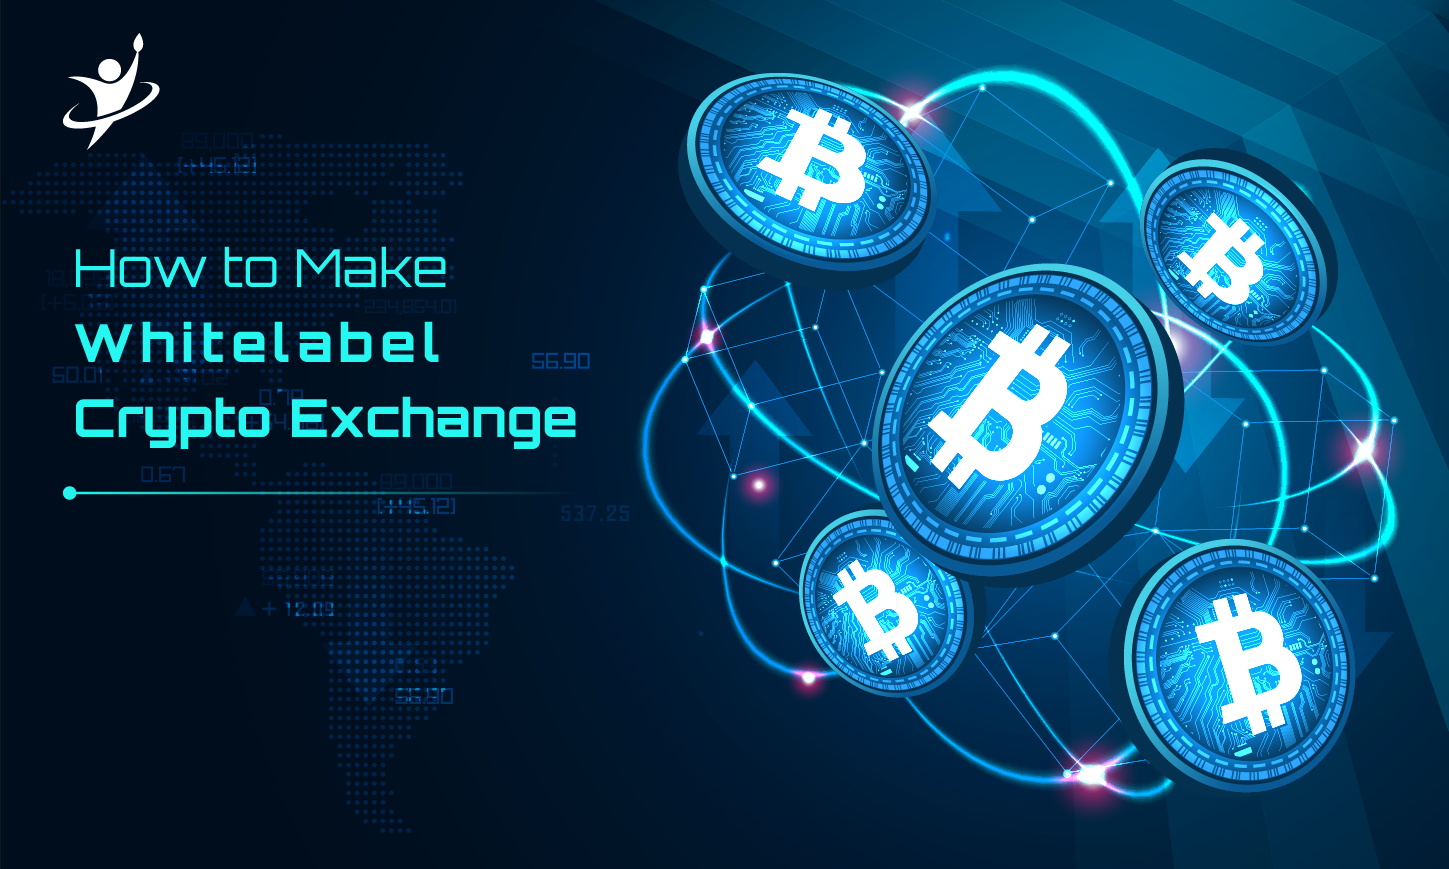 White Label Crypto Exchange development Company - LBM Solutions